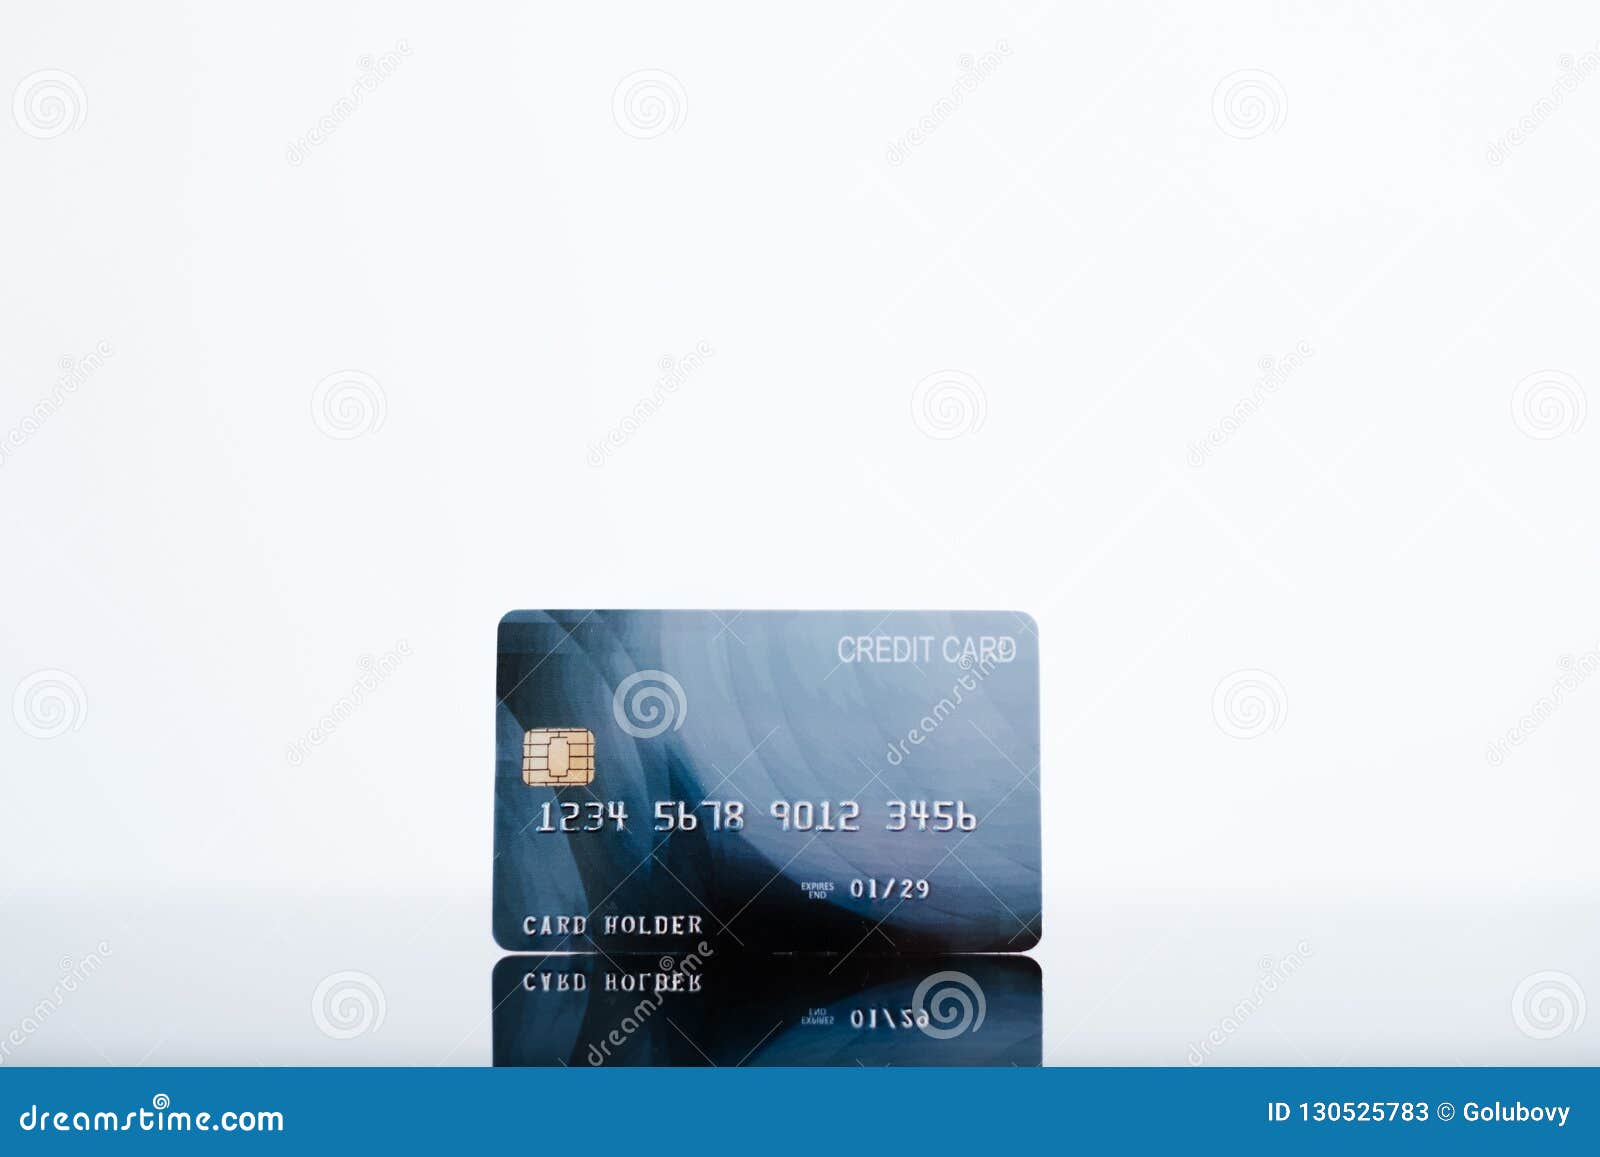 Ηλεκτρονικά χρήματα τραπεζών υποβάθρου πιστωτικών καρτών άσπρα. Πιστωτική κάρτα στο άσπρο υπόβαθρο τραπεζικές διαδικασίες και ηλεκτρονική έννοια χρημάτων